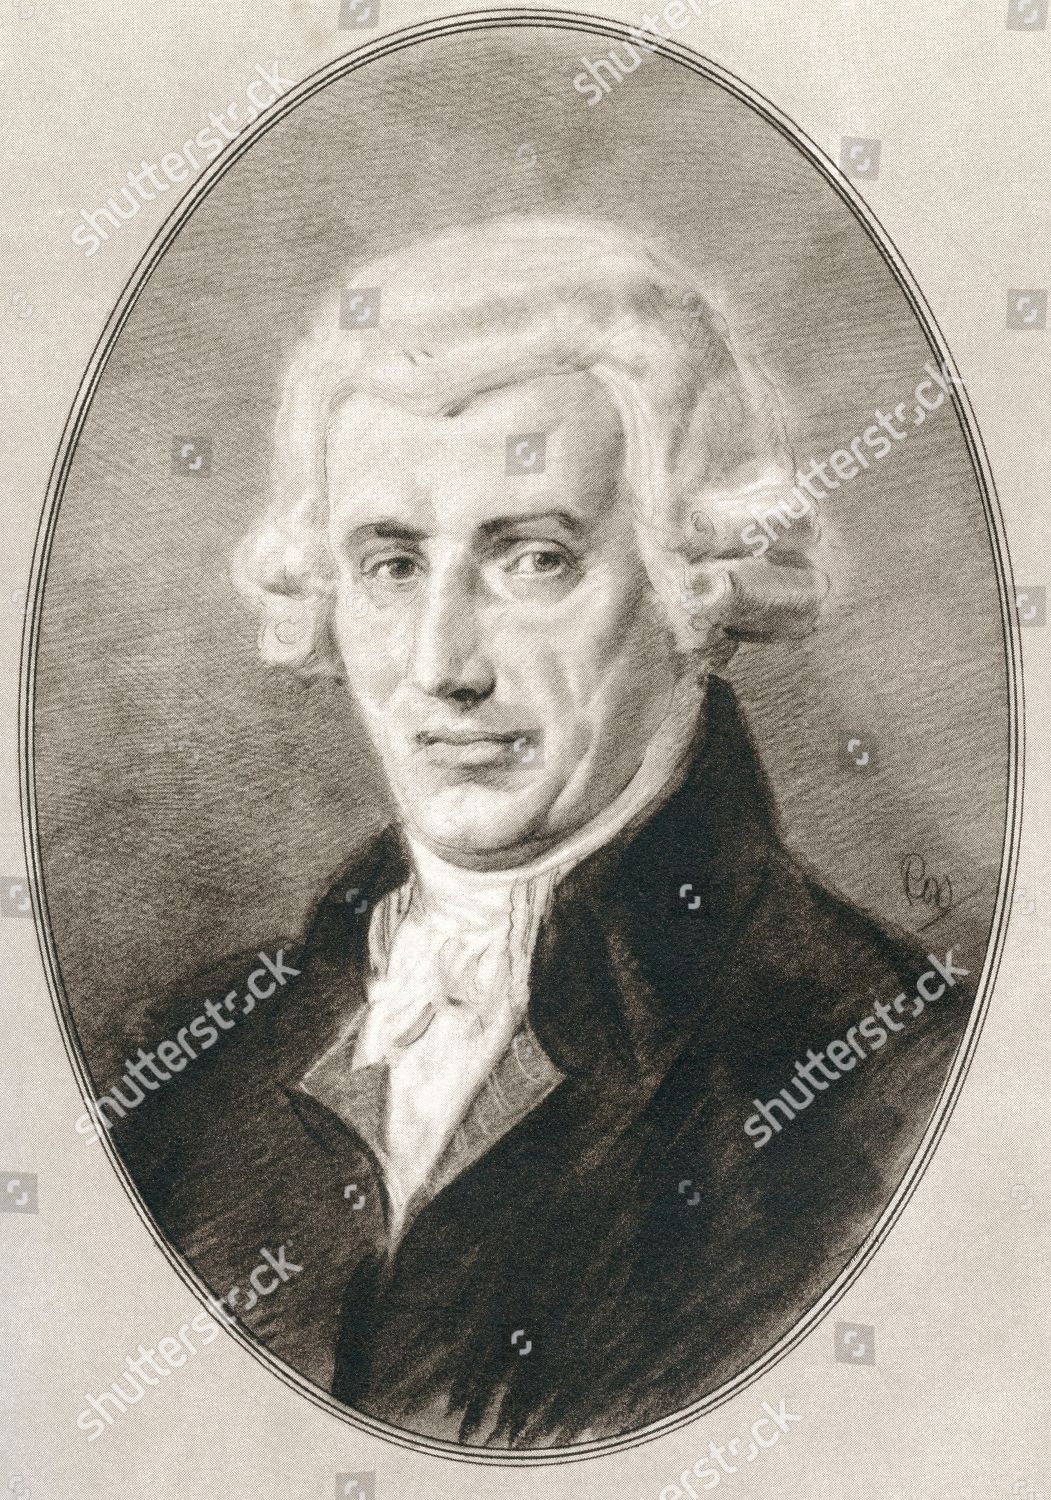 Franz Joseph Haydn 1732 1809 Austrian: редакционная стоковая фотография —  стоковое изображение | Shutterstock